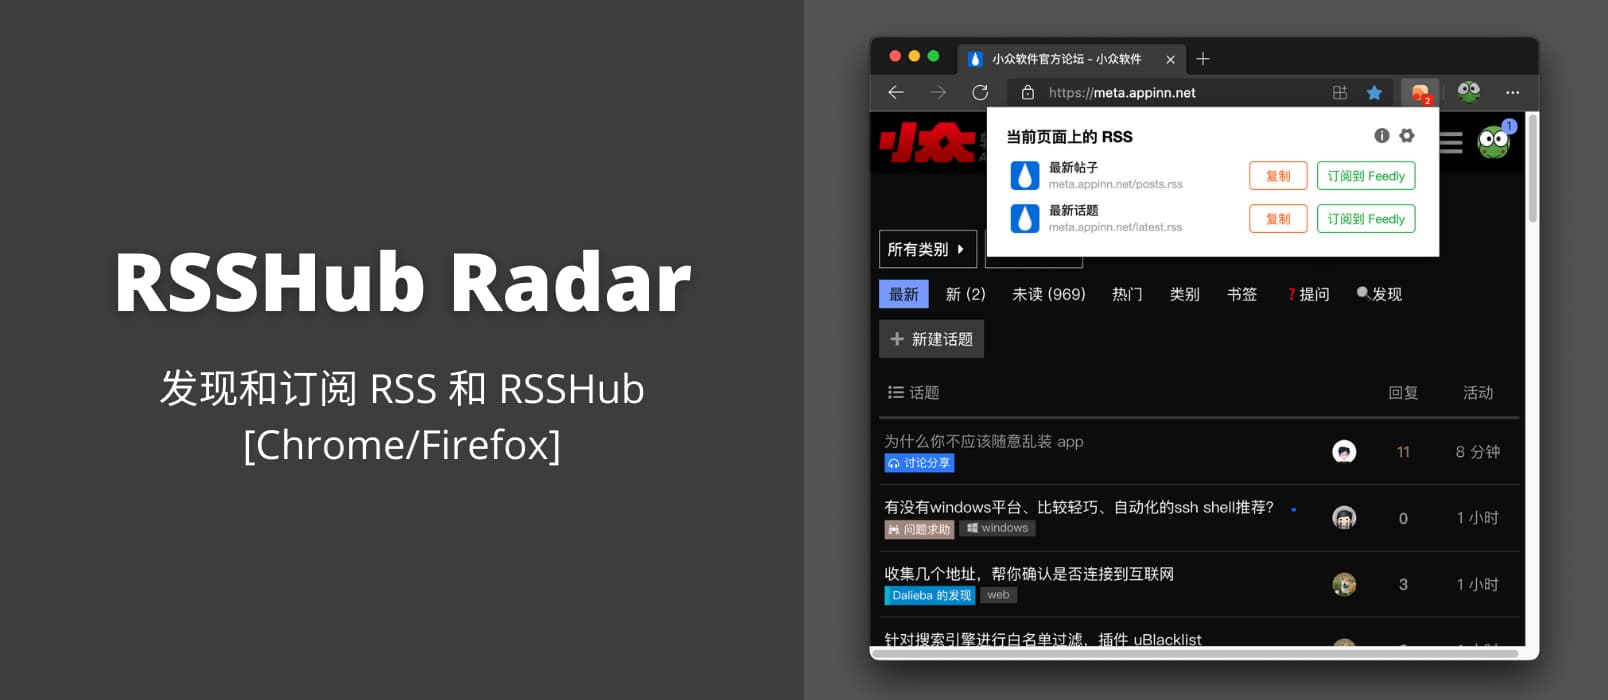 RSSHub Radar - 可能是最好的 RSS 和 RSSHub 辅助扩展[Chrome/Firefox]